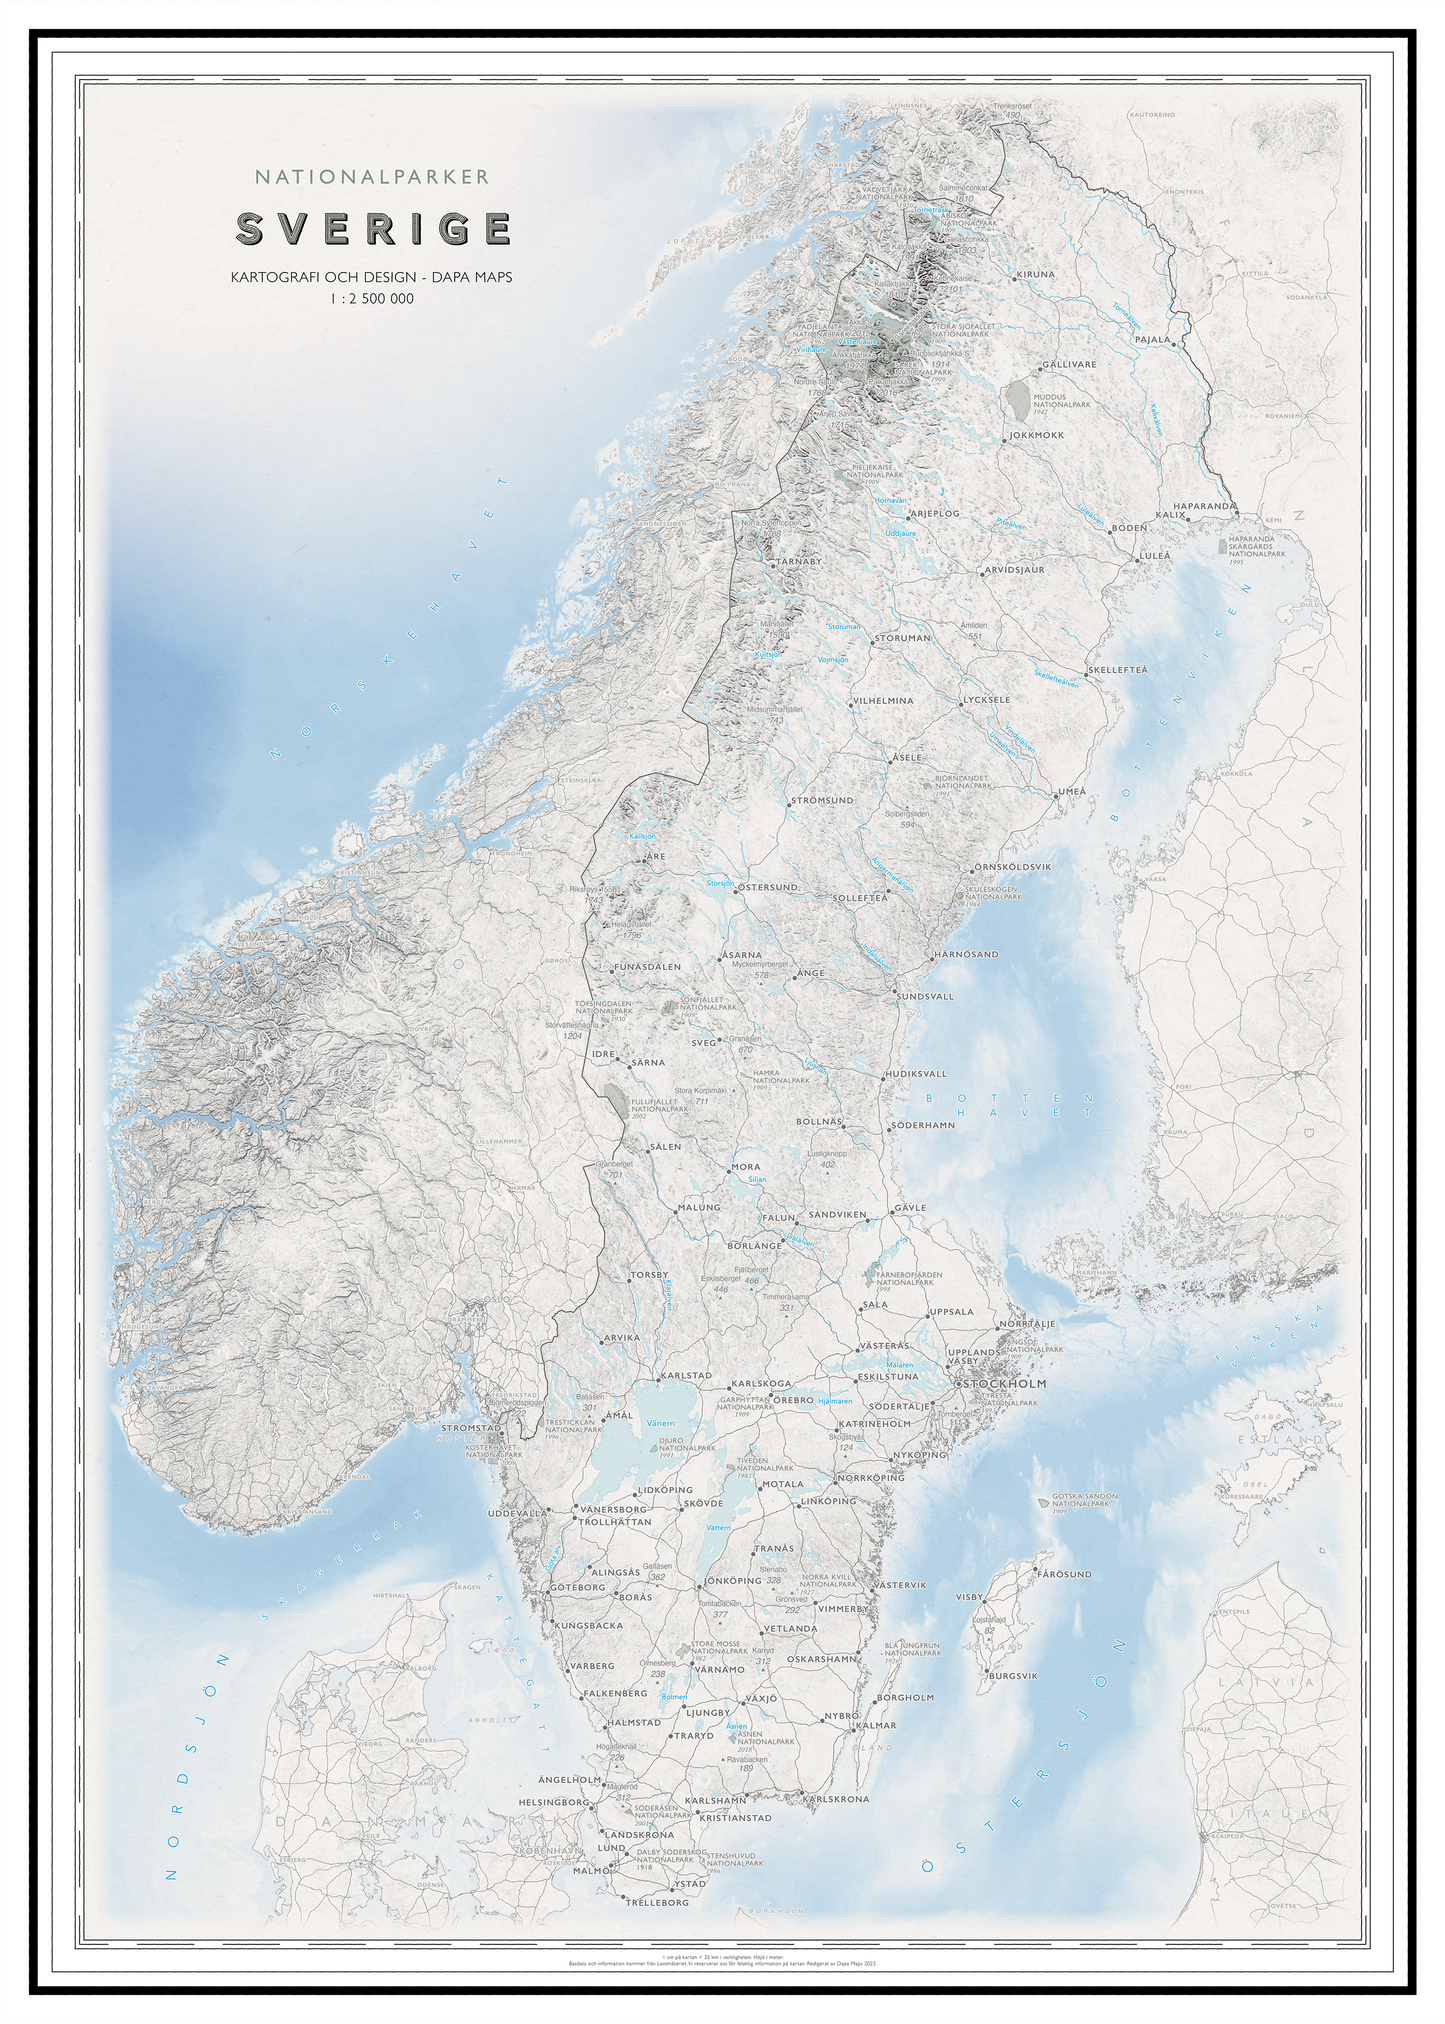 Kart over Sverige med nasjonalparker